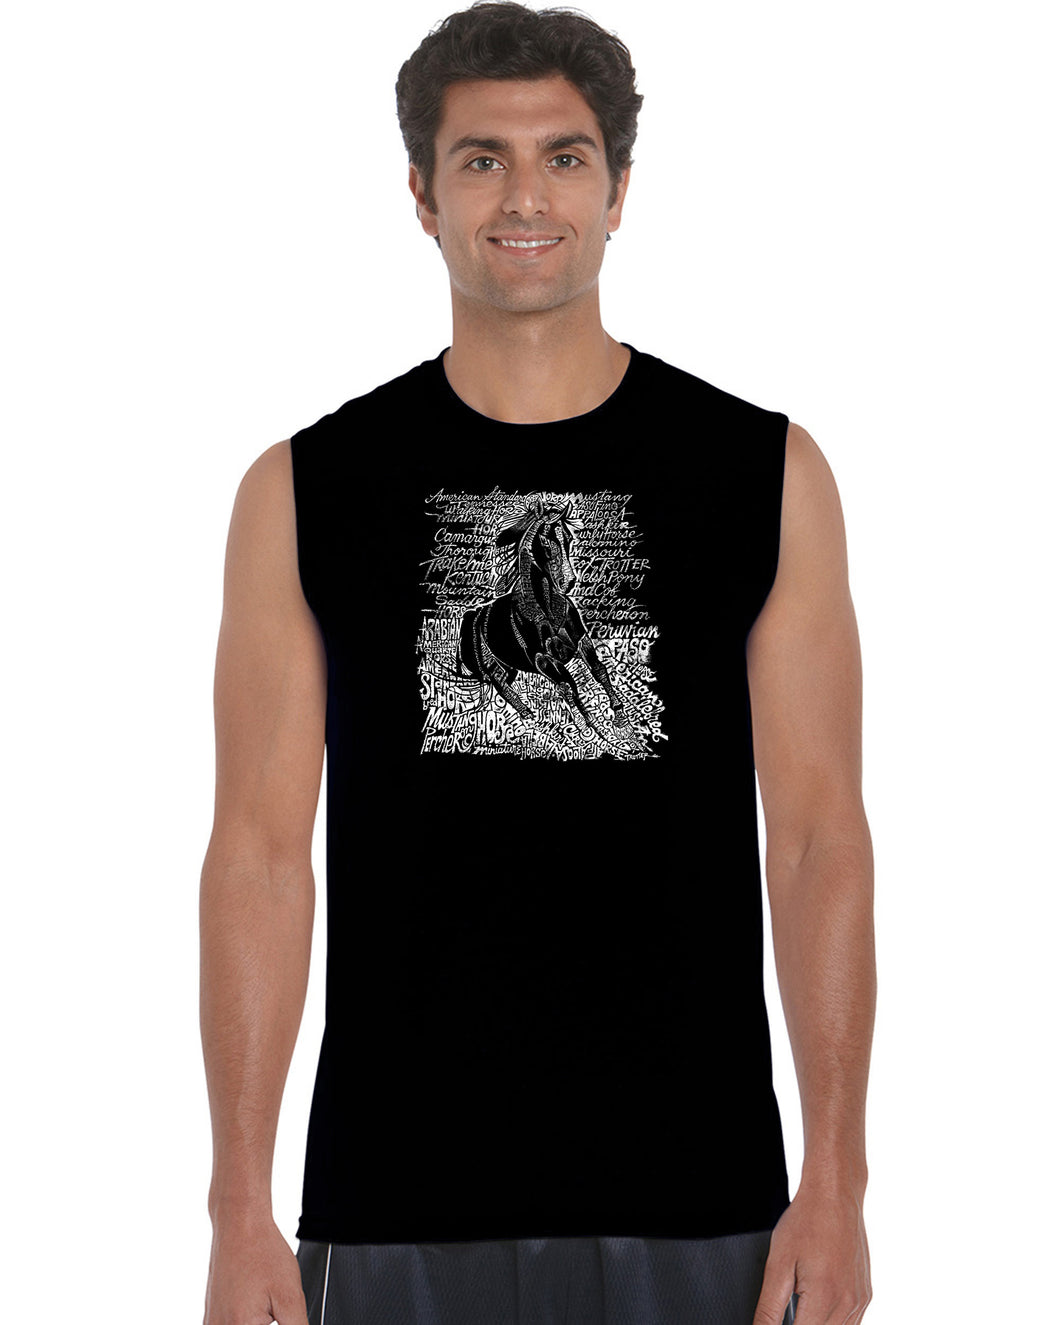 POPULAR HORSE BREEDS - Men's Word Art Sleeveless T-Shirt